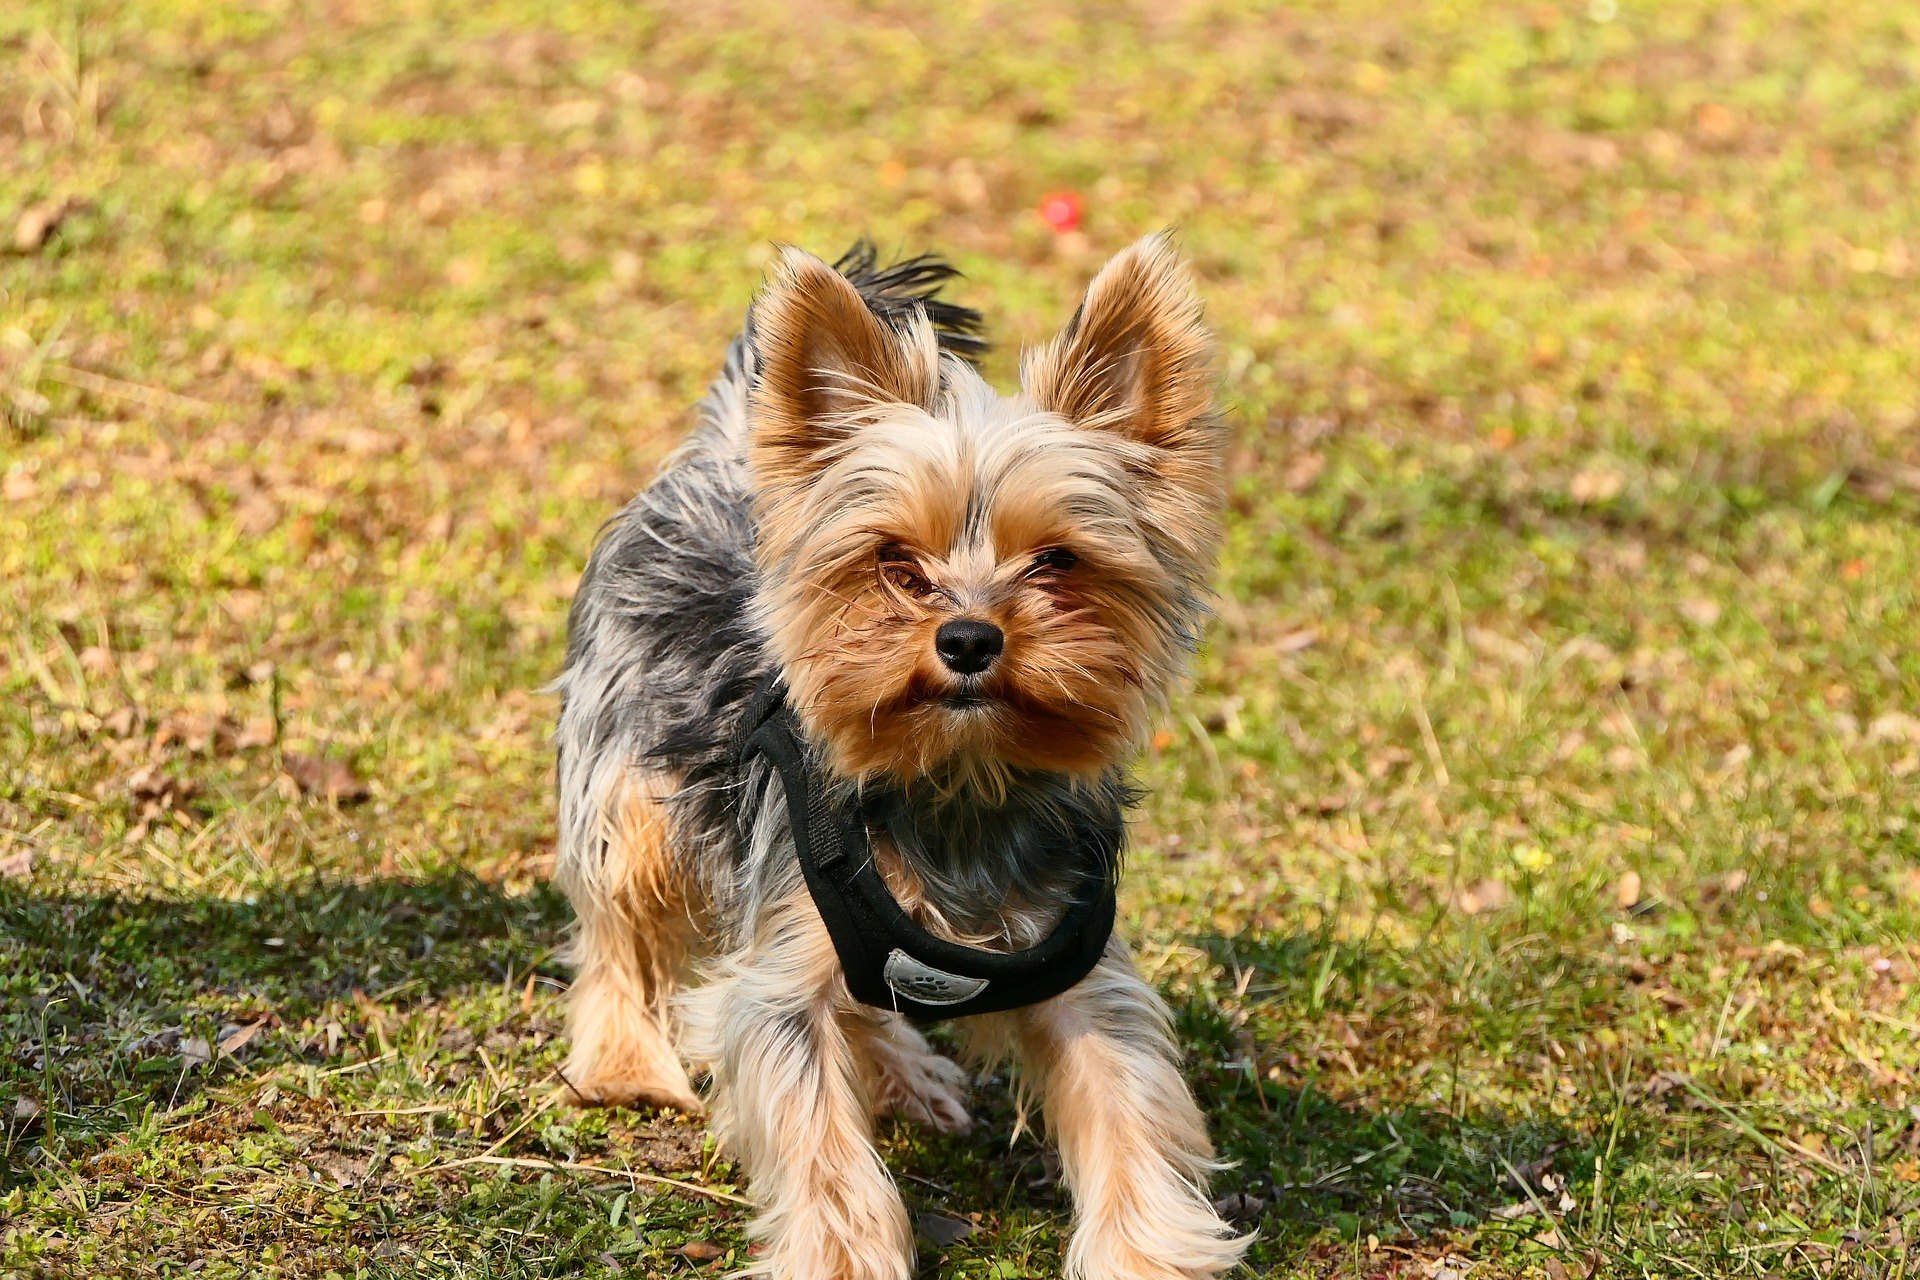 Ein Halfter ist eine Art Klemmhalsband, das am Mund eines Hundes angebracht wird und das Verhalten des Hundes während des Trainings beeinflusst.